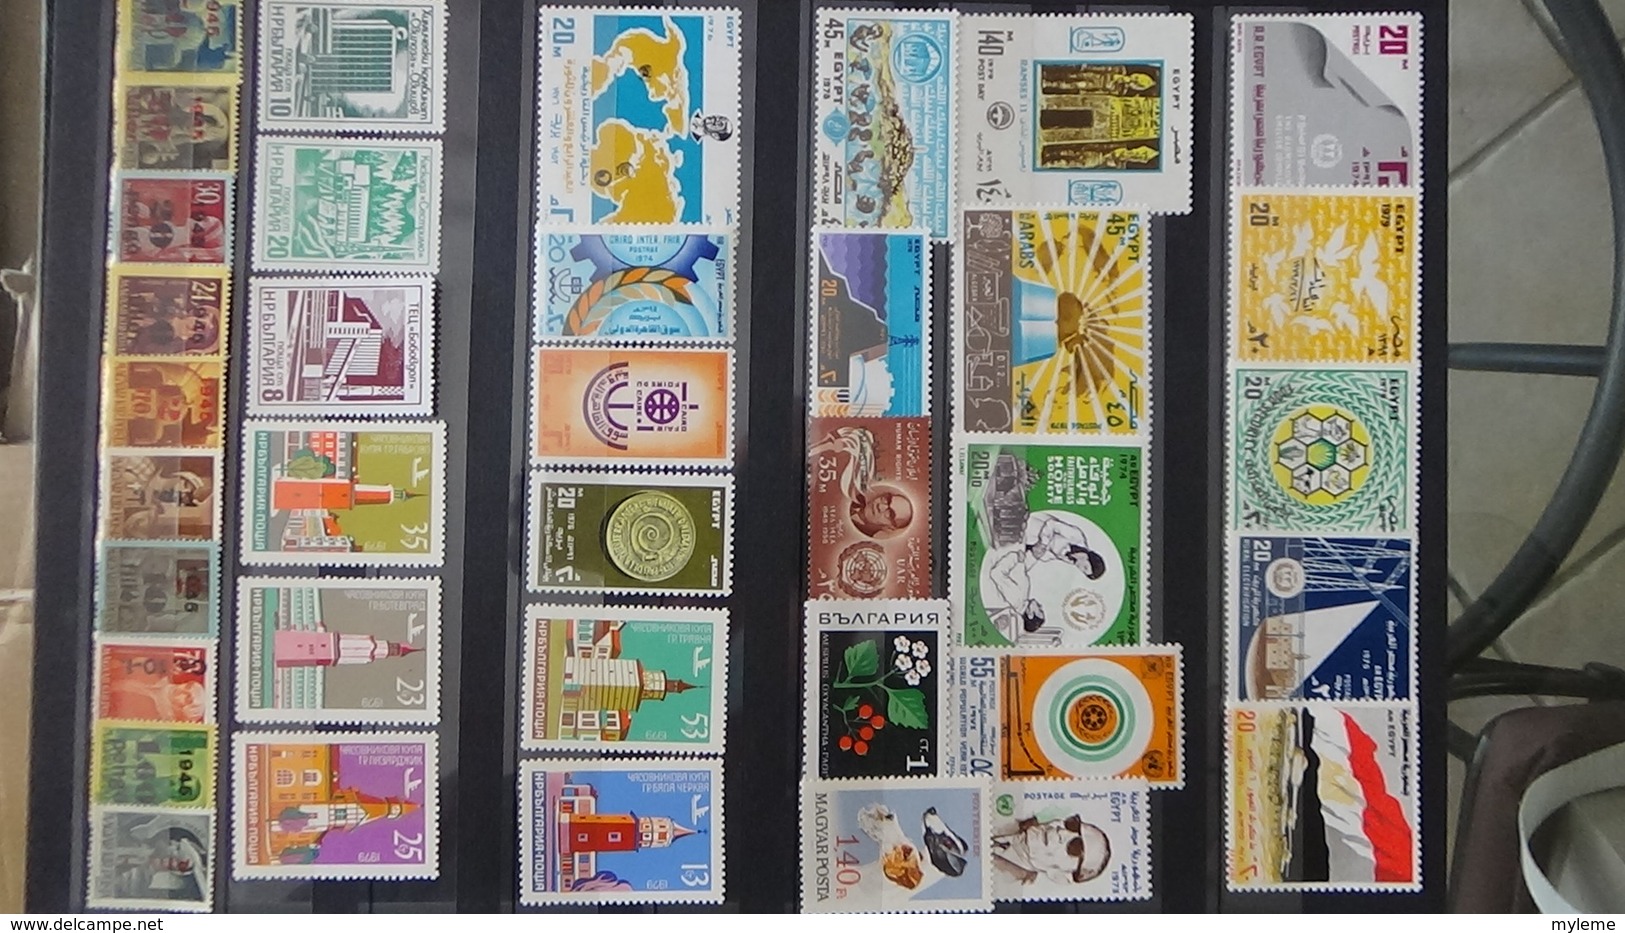 Belle collection de timbres et blocs ** tous pays dont URSS. A saisir !!! Port offert pour 50 euros d'achat.